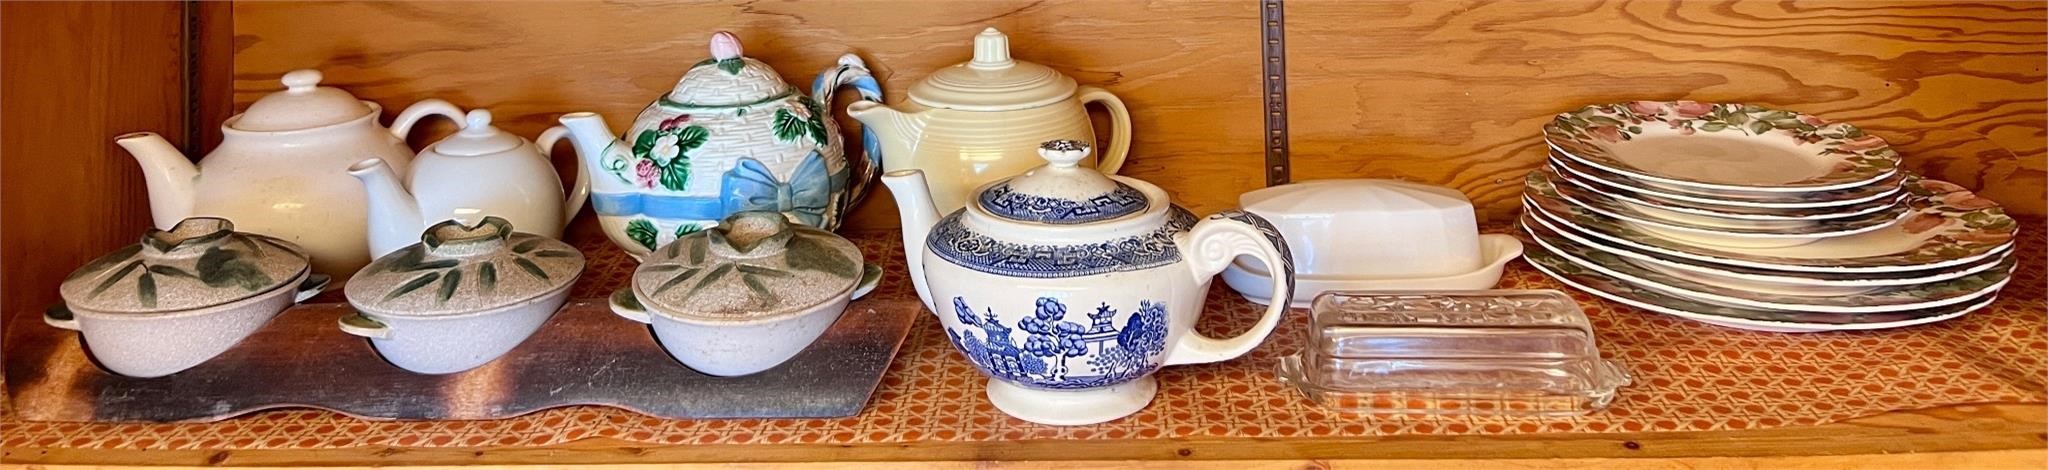 Kitchen cabinet lot teapots & more!